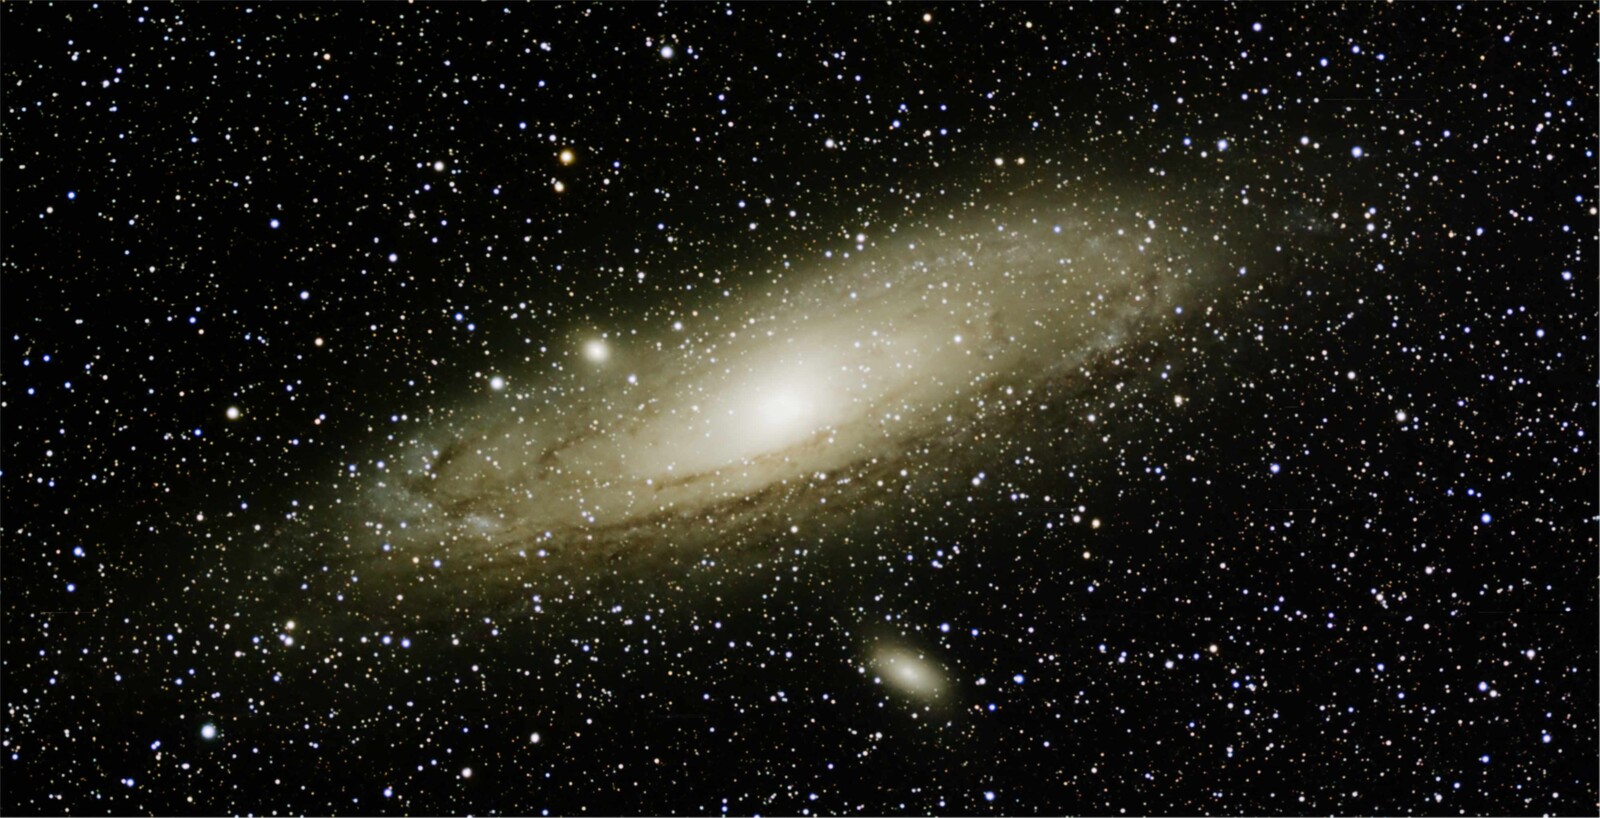 Mosaic of M31 Andromeda Galaxy